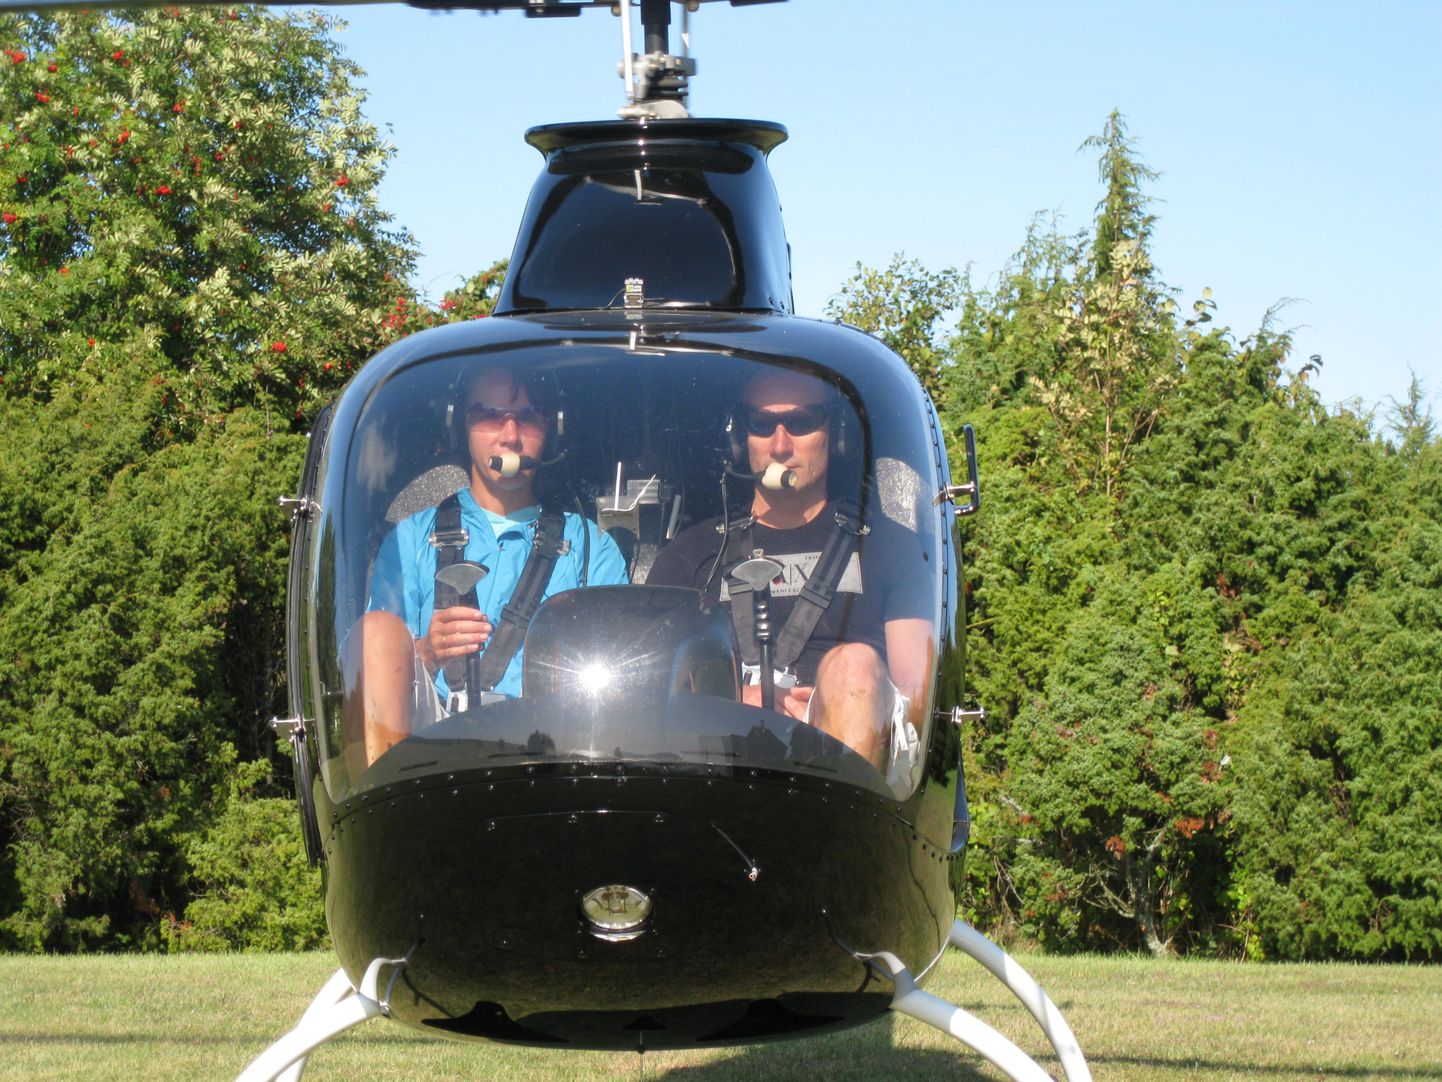 Andres ja Oleg Sõnajalg - esimesed Eesti helikopterilubadega erapiloodid